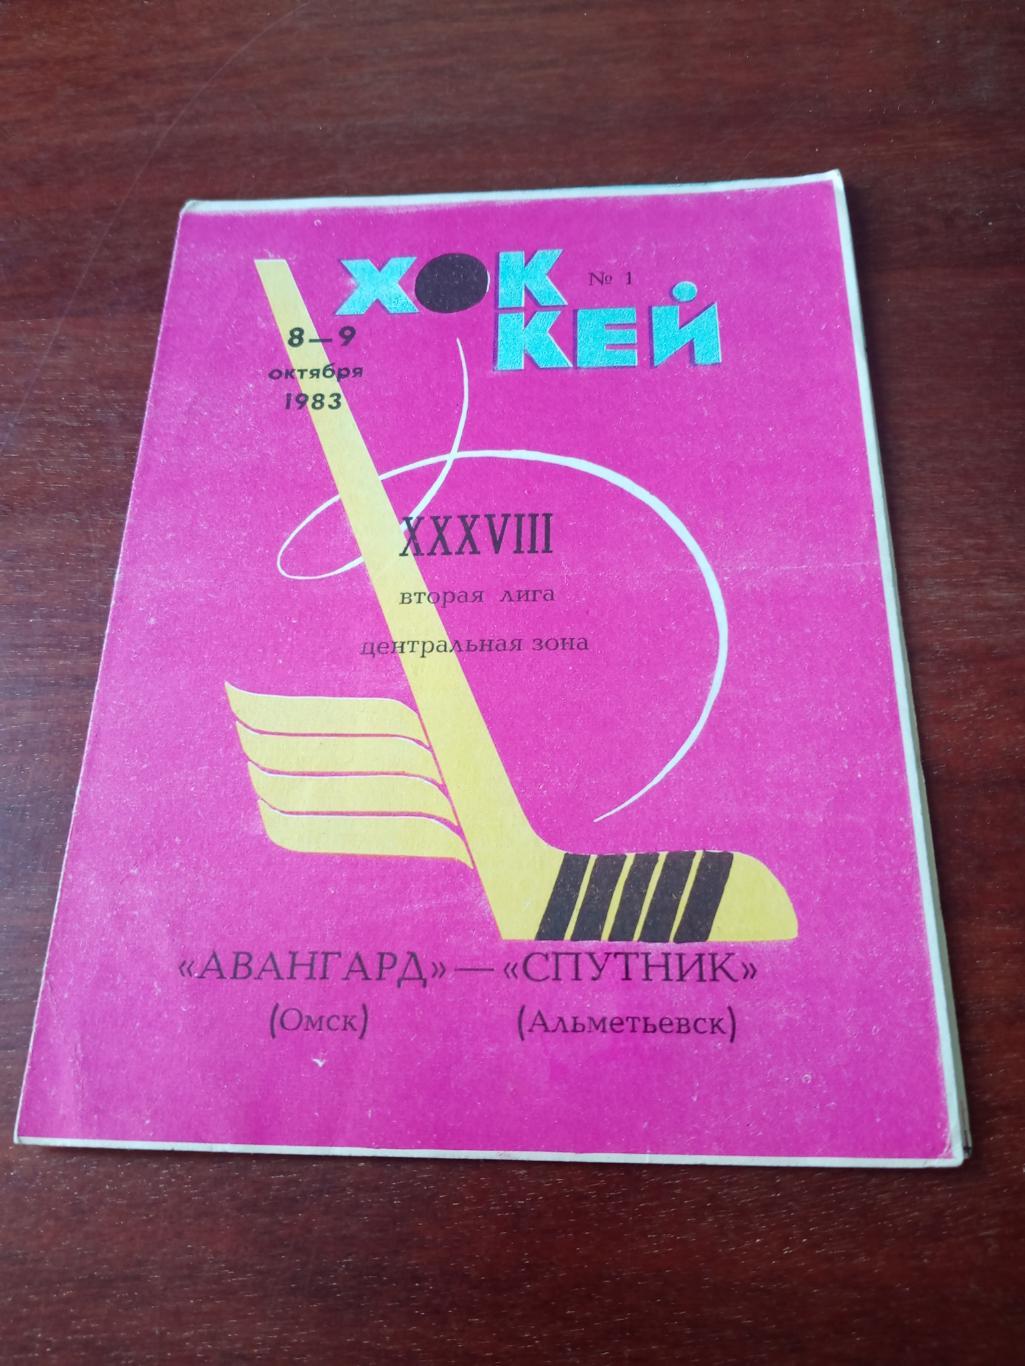 Авангард Омск - Спутник Альметьевск. 8 и 9 октября 1983 год